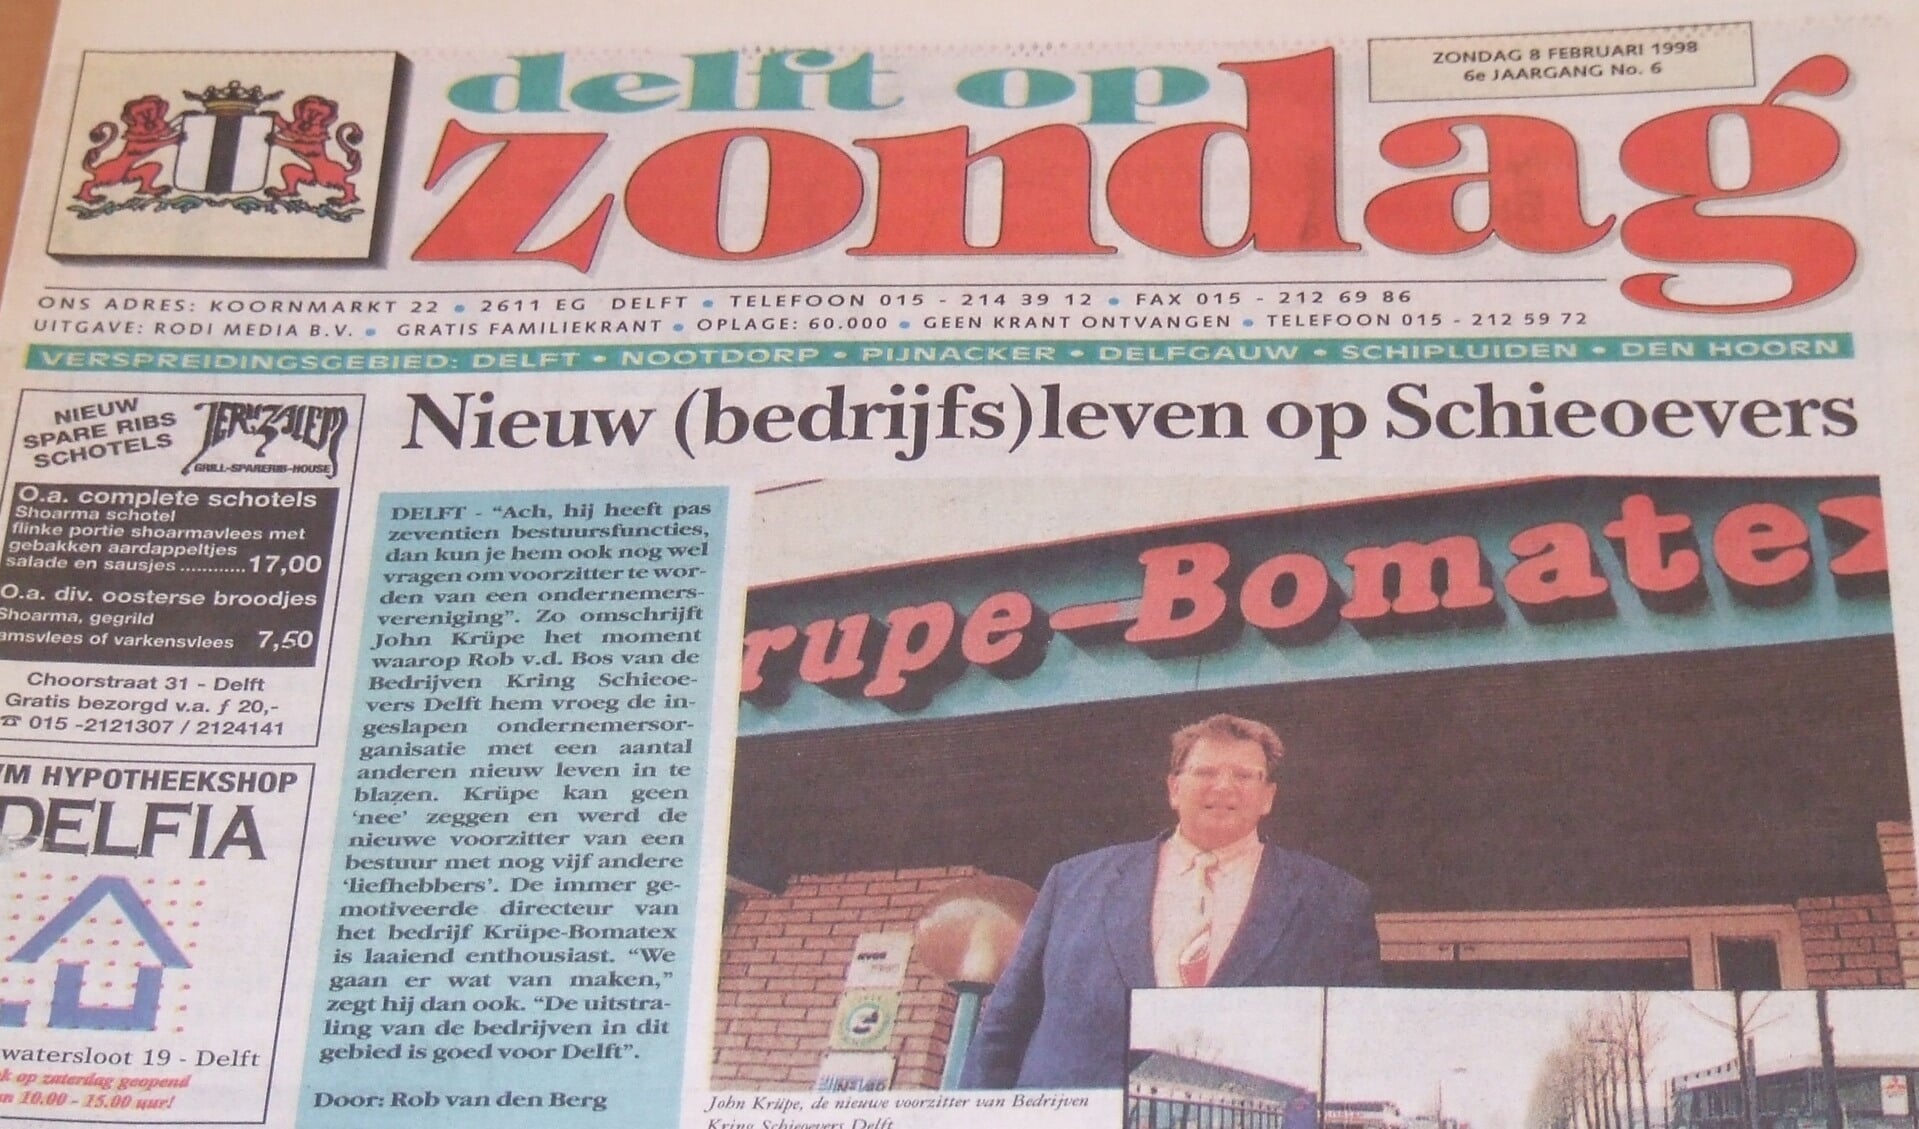 Delft op Zondag opende op 8 februari 1998 met een artikel over het nieuwe bestuur van BKS. 